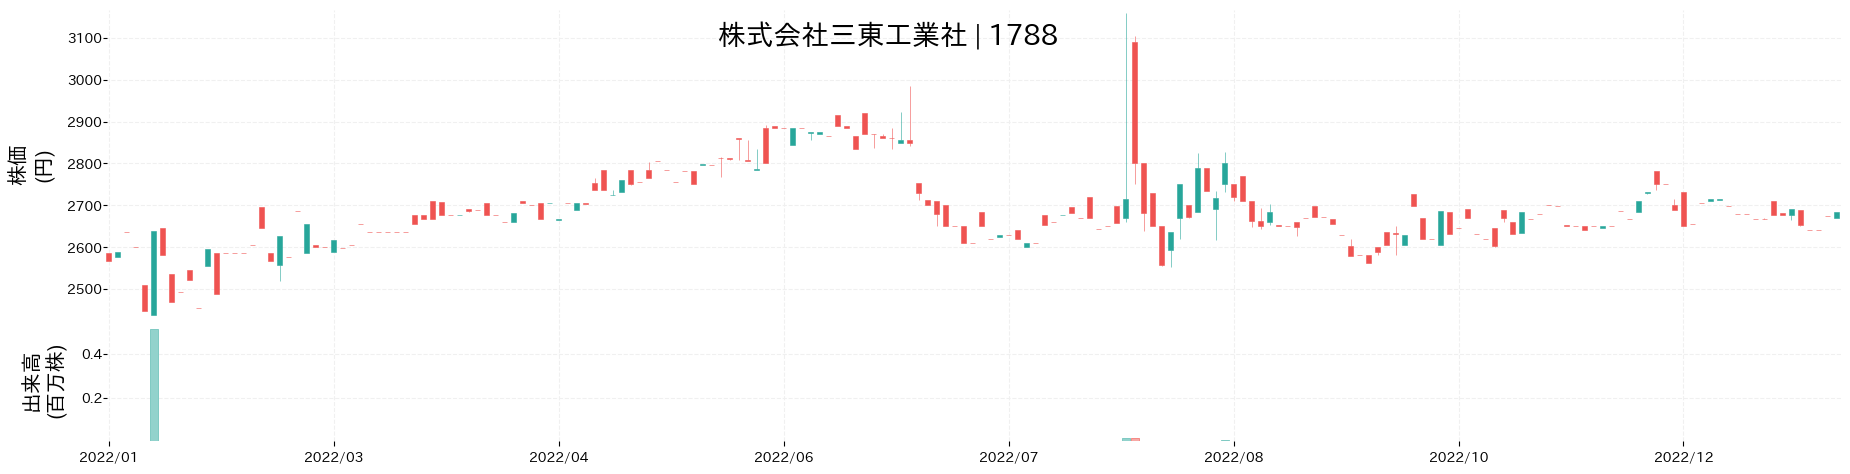 三東工業社の株価推移(2022)